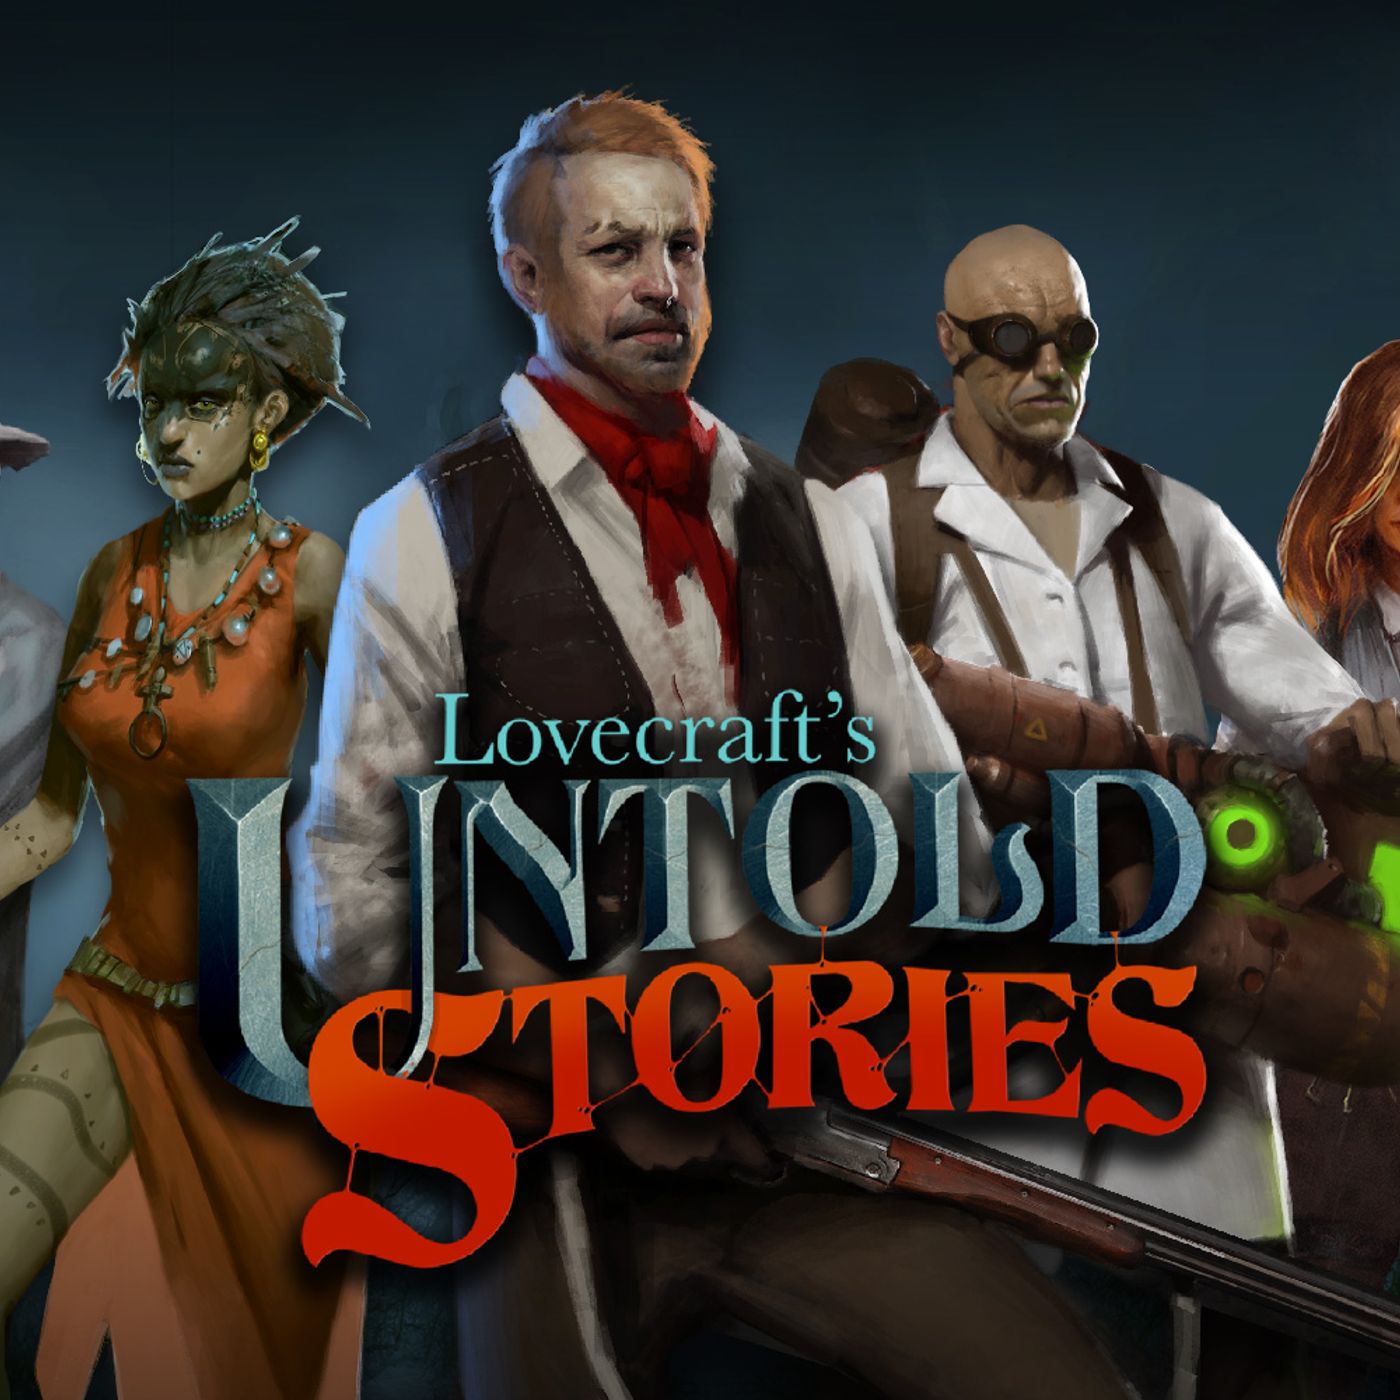 Lovecraft's Untoled Stories: In Guerra contro i Grandi Antichi!